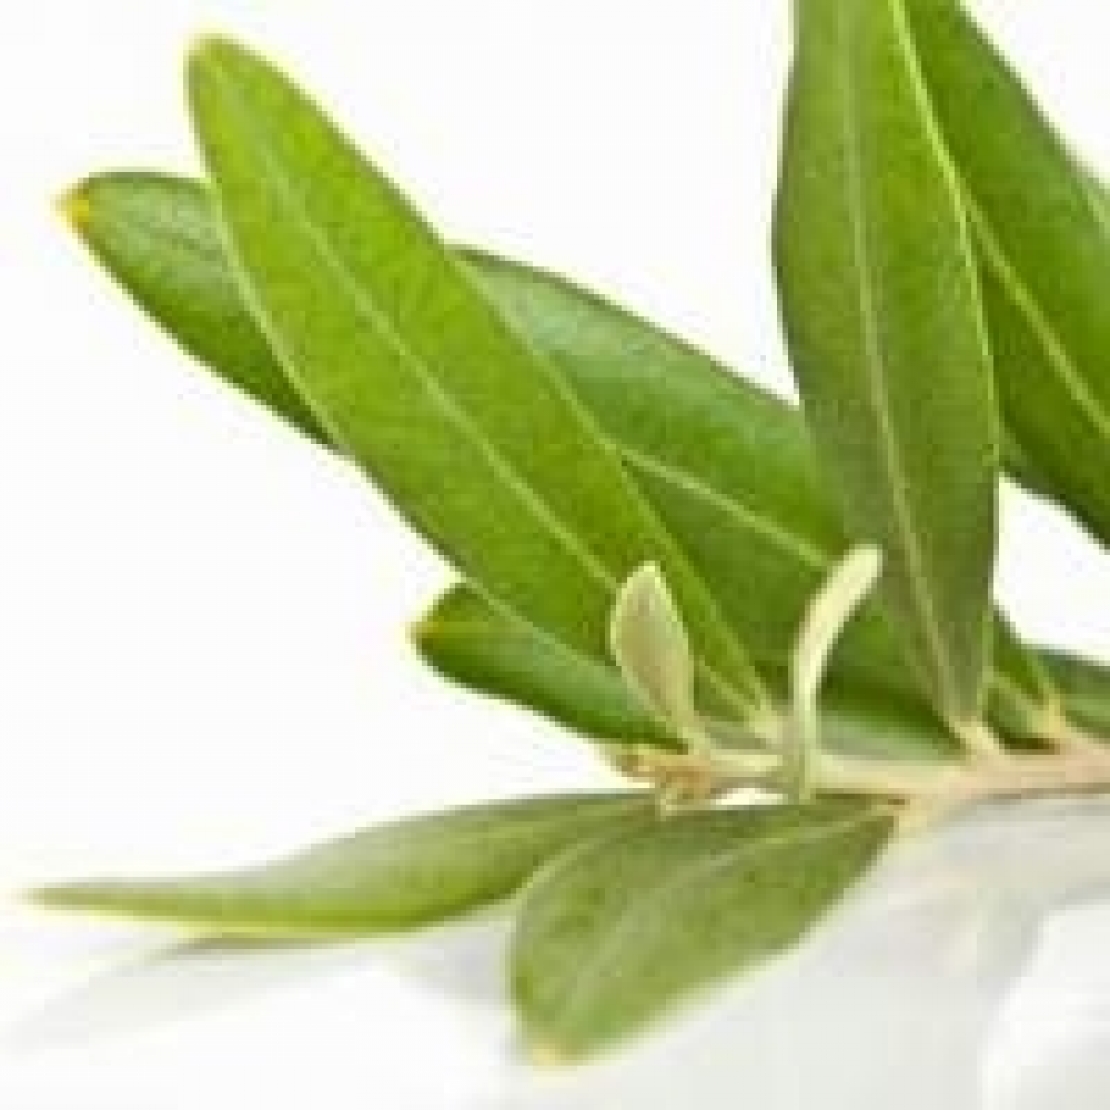 Per avere tutti gli effetti benefici occorre essiccare le foglie di olivo velocemente